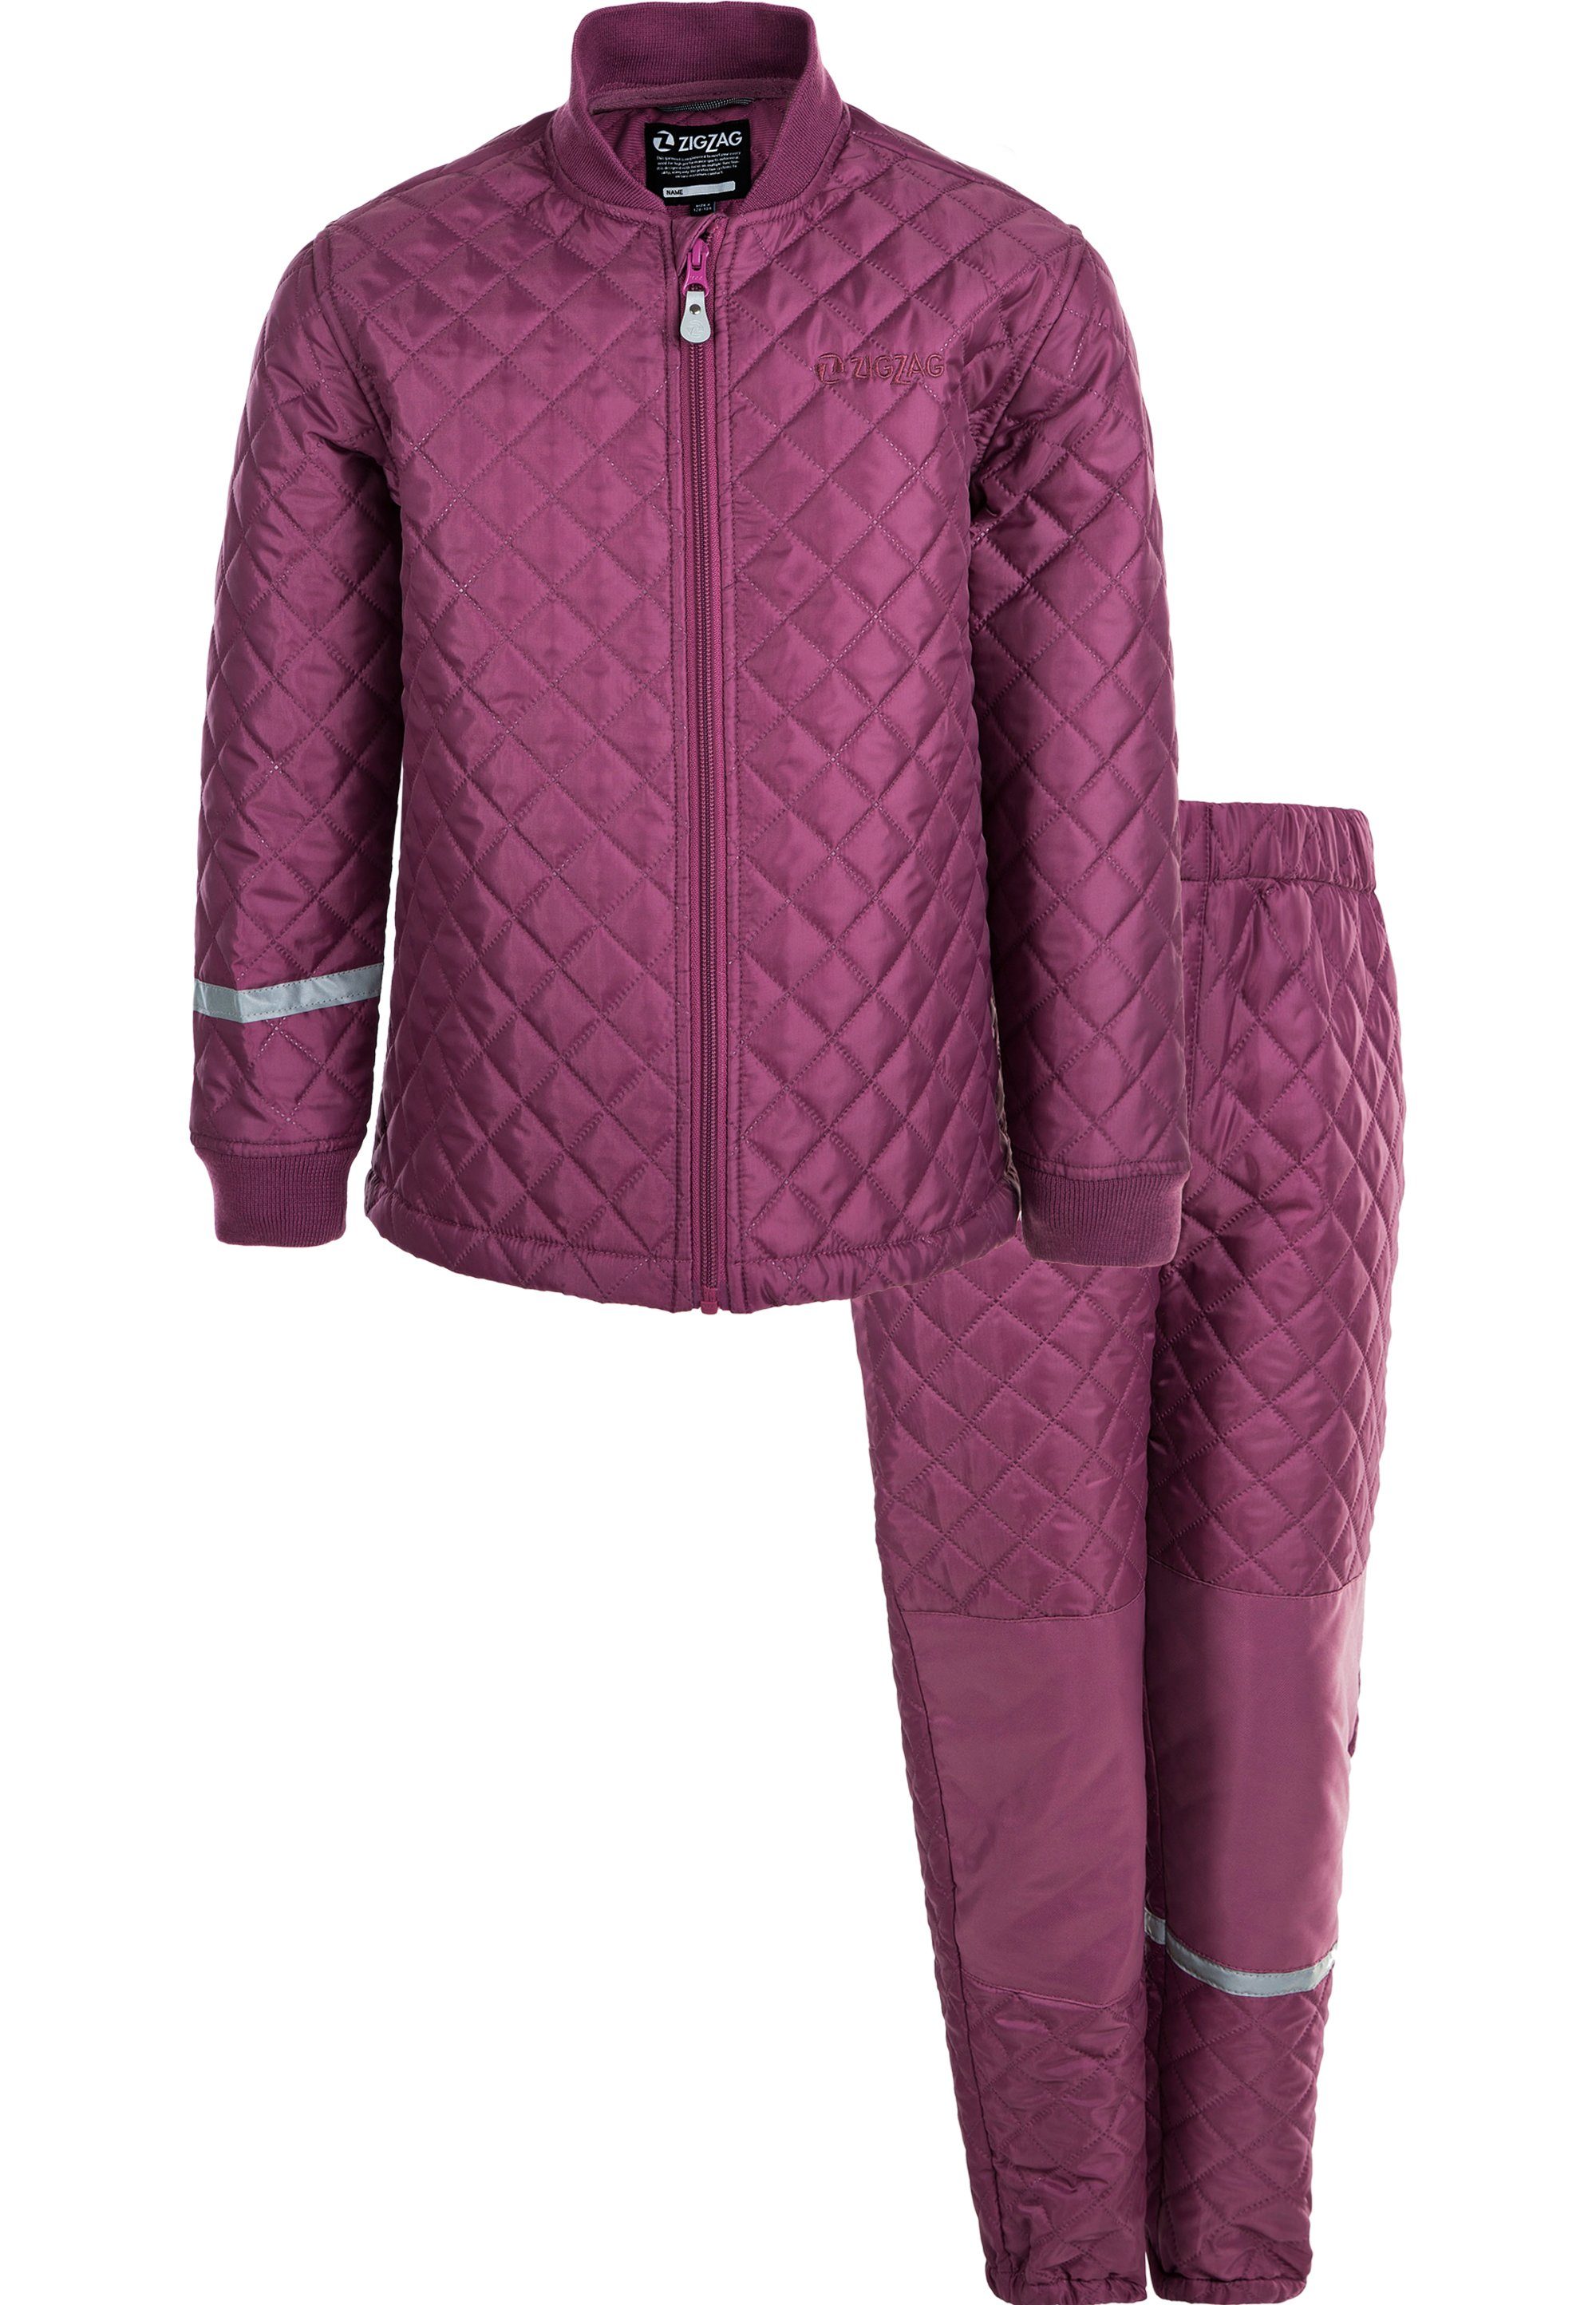 ZIGZAG Skianzug an Steppung, bieten Tiger, Hose und Elemente mit Sichtbarkei Reflektierende wärmender Jacke